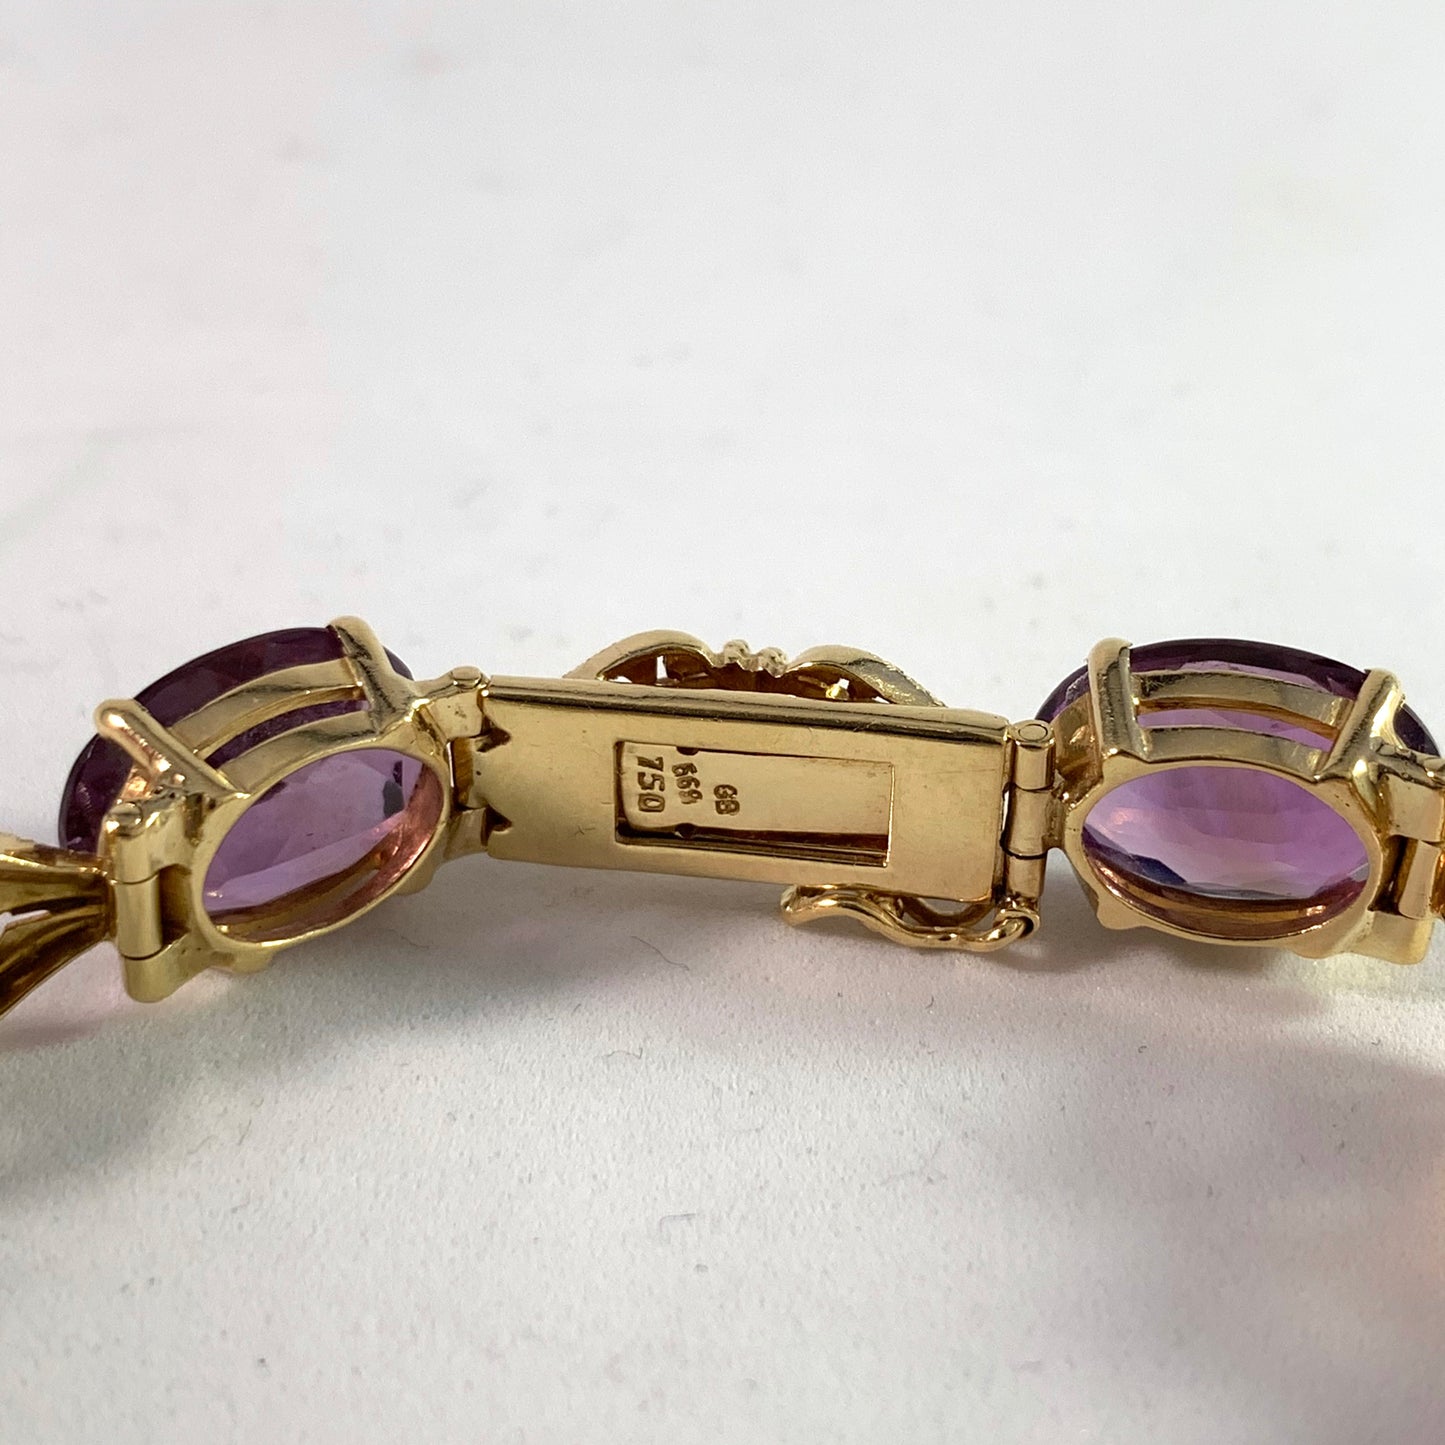 Maker GB, Brazil 1950s 18k Gold Amethyst Bracelet.